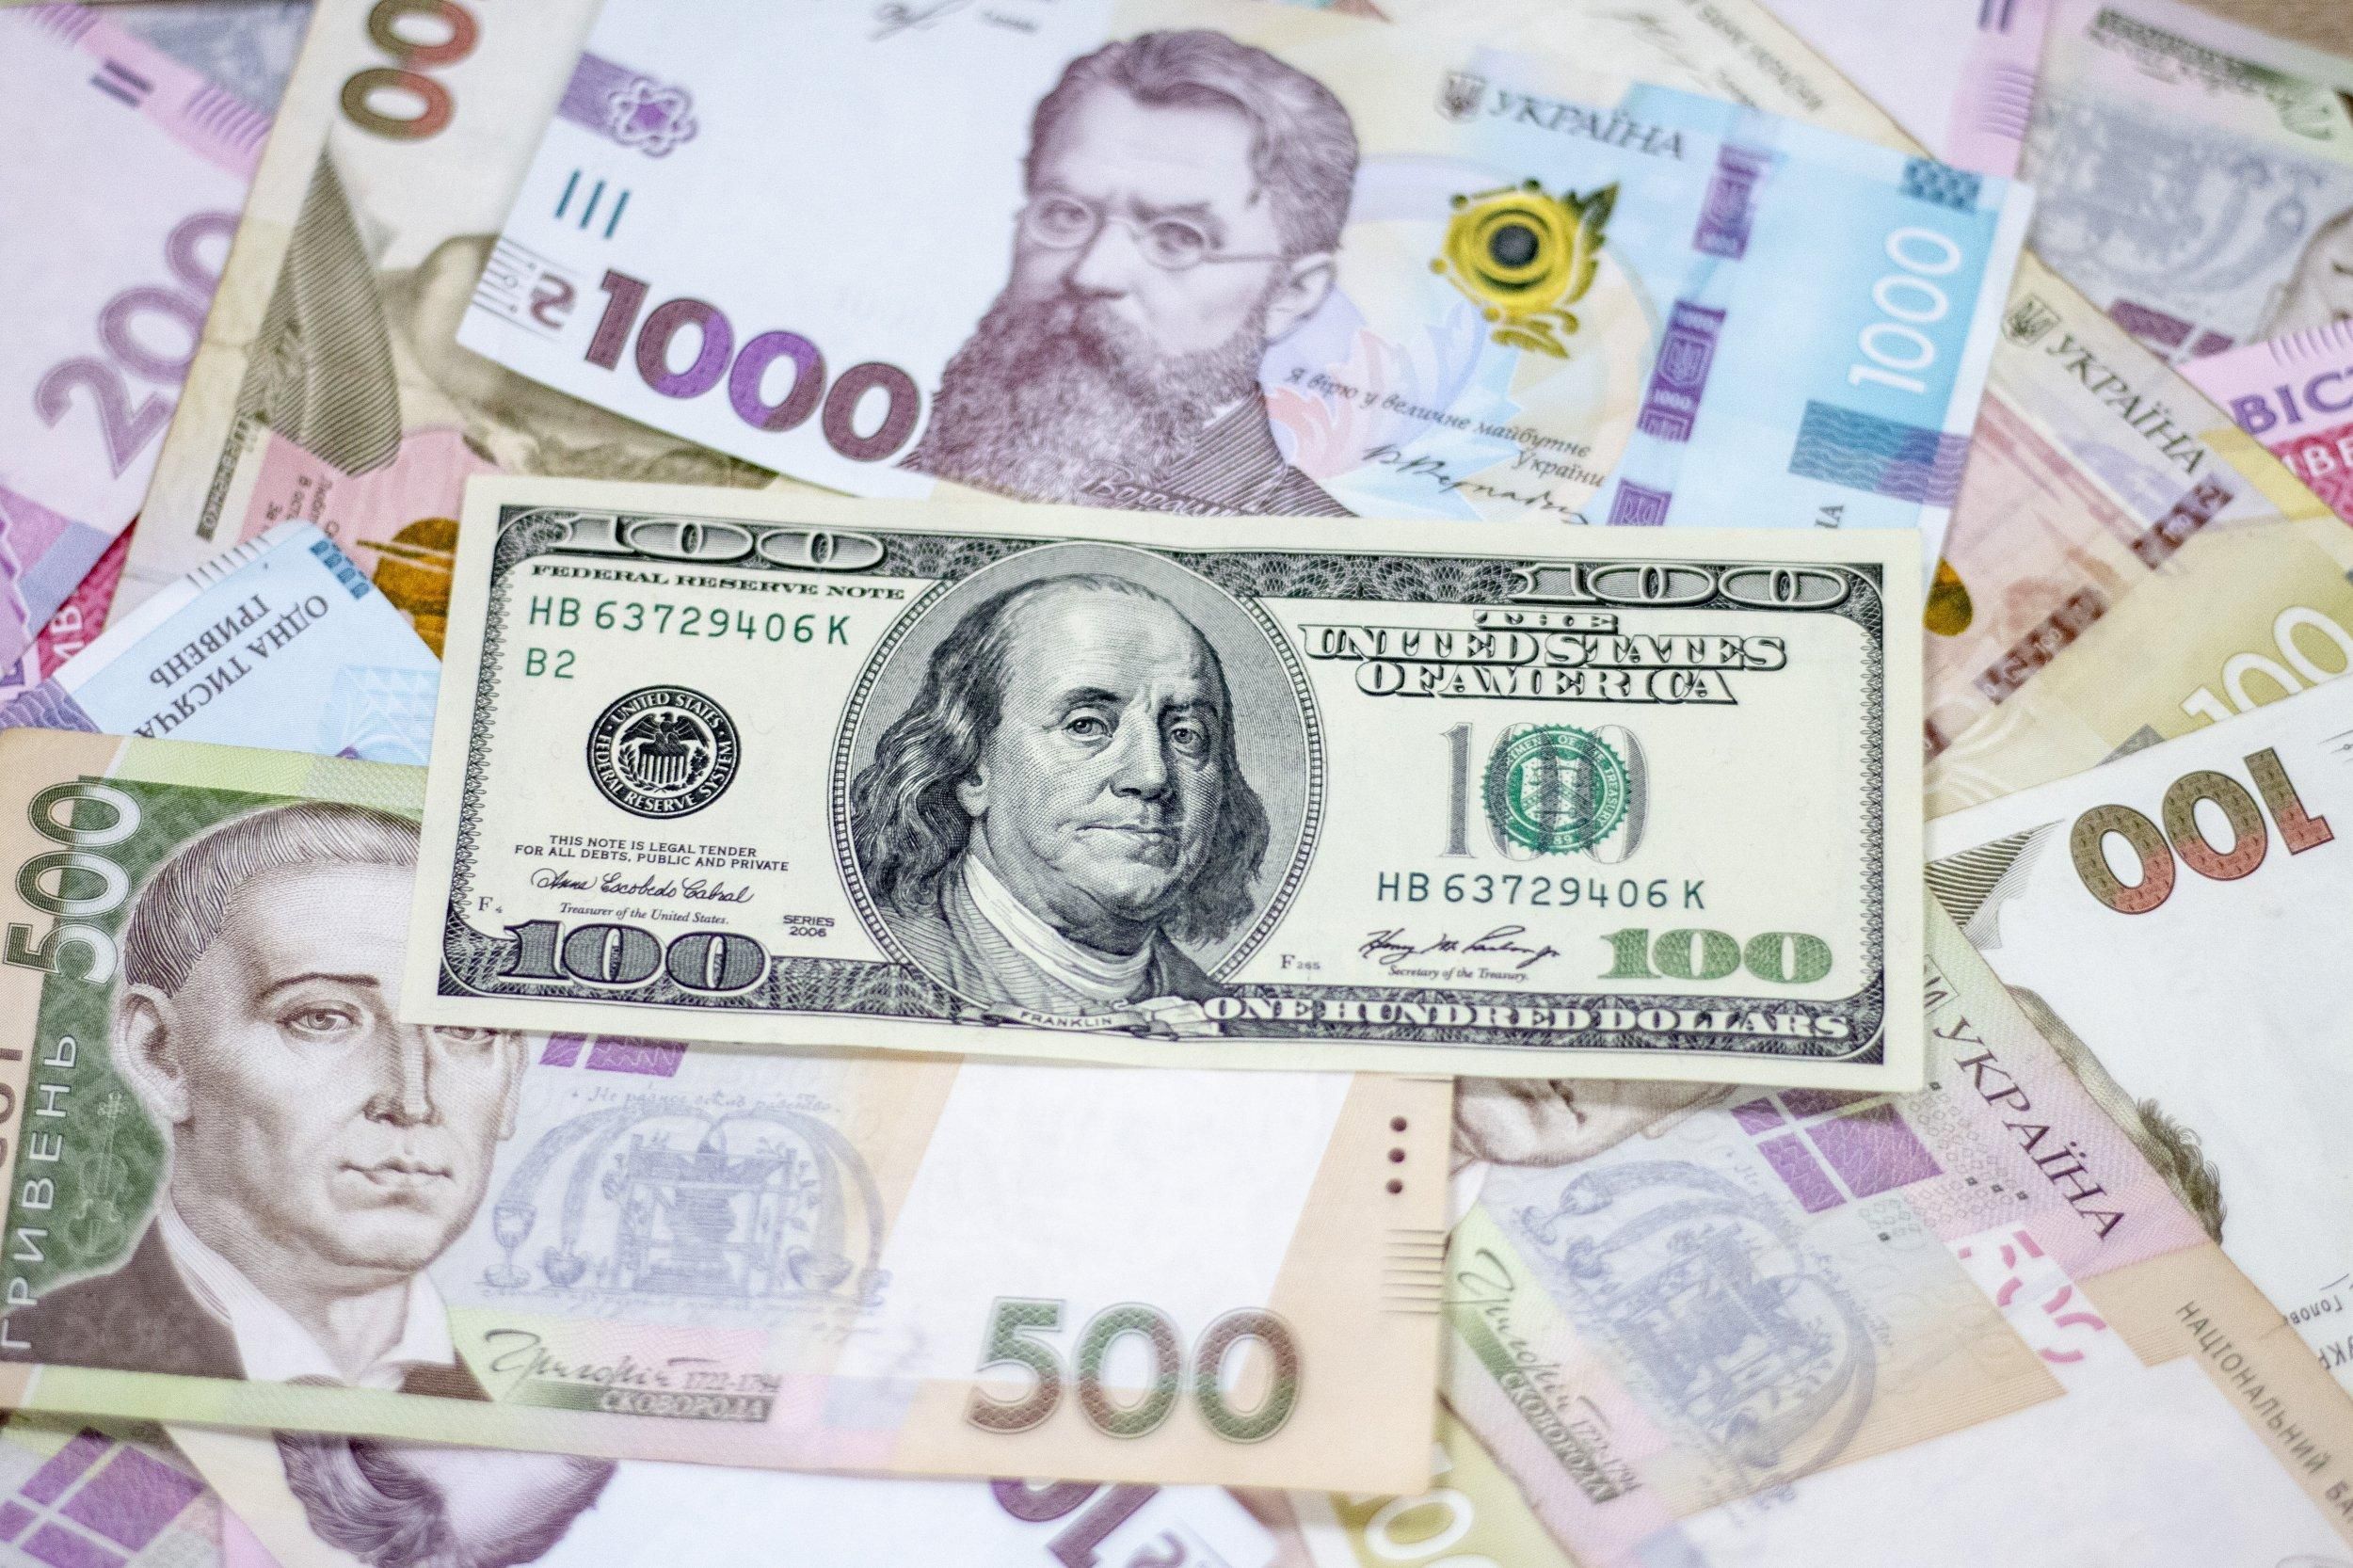 Дали 50 тисяч гривень за порятунок синів від поліції: у Львові 2 пенсіонерки потрапили у аферу